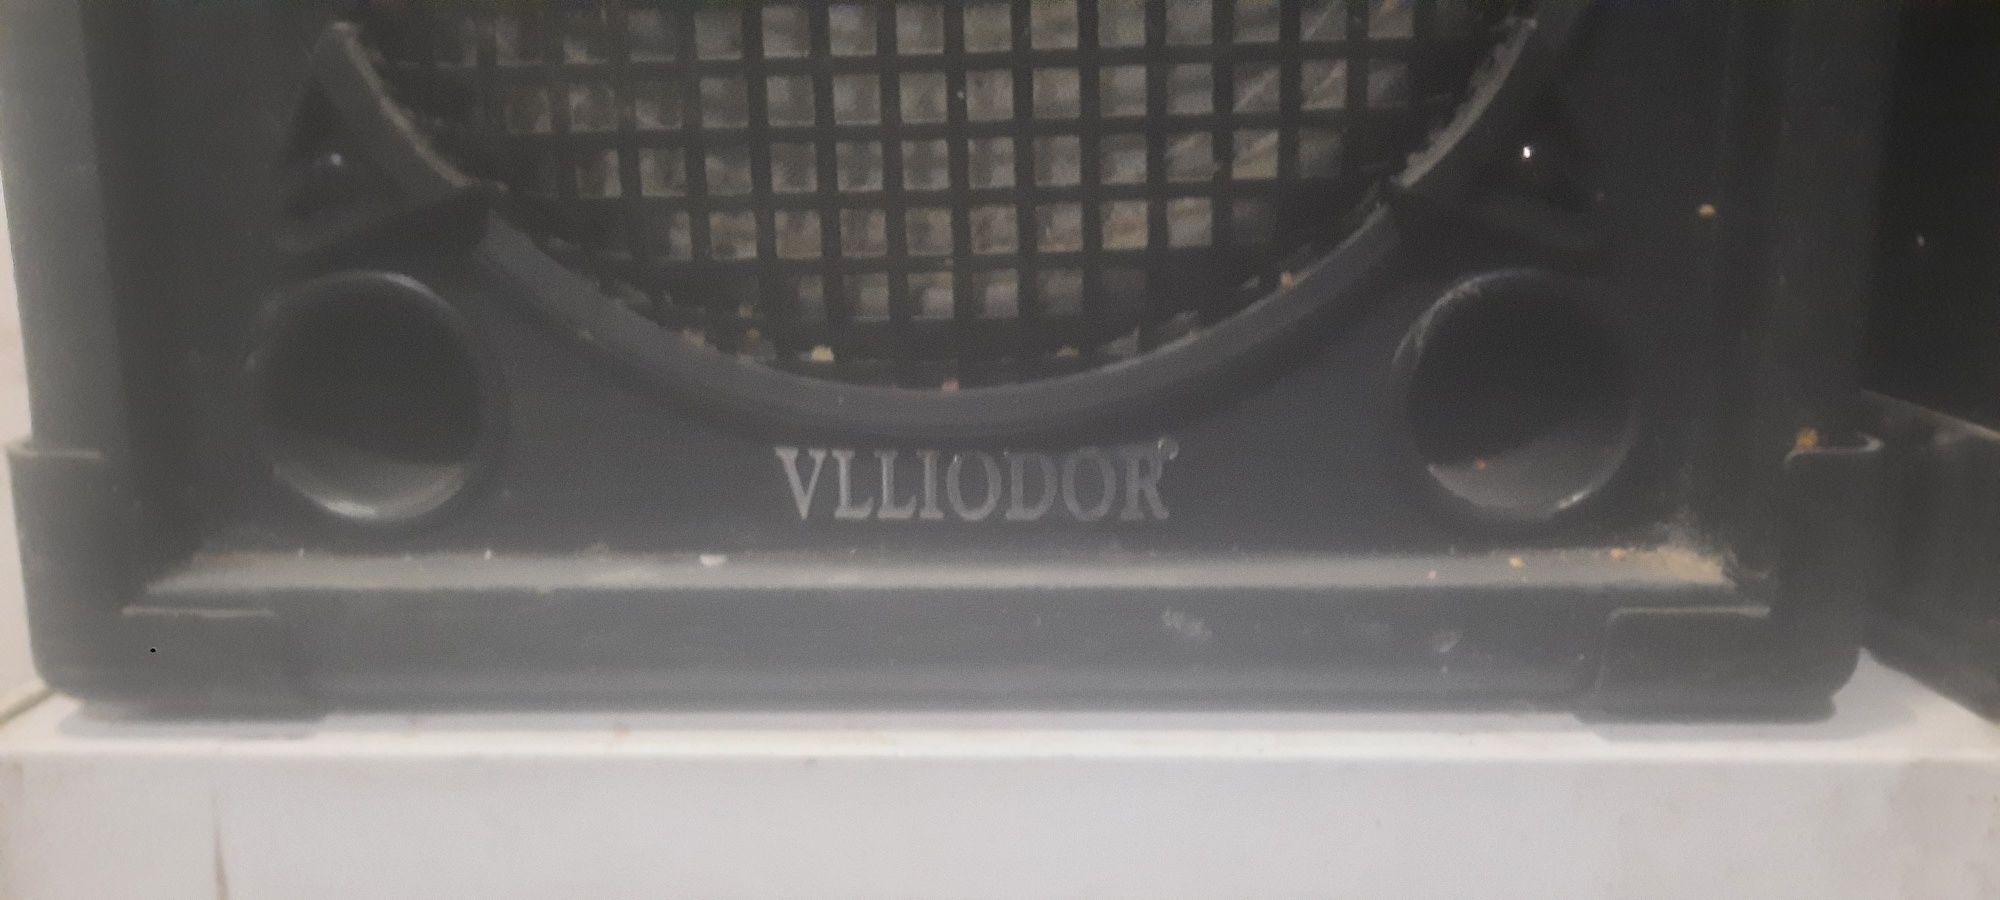 Boxe Profi Villodor